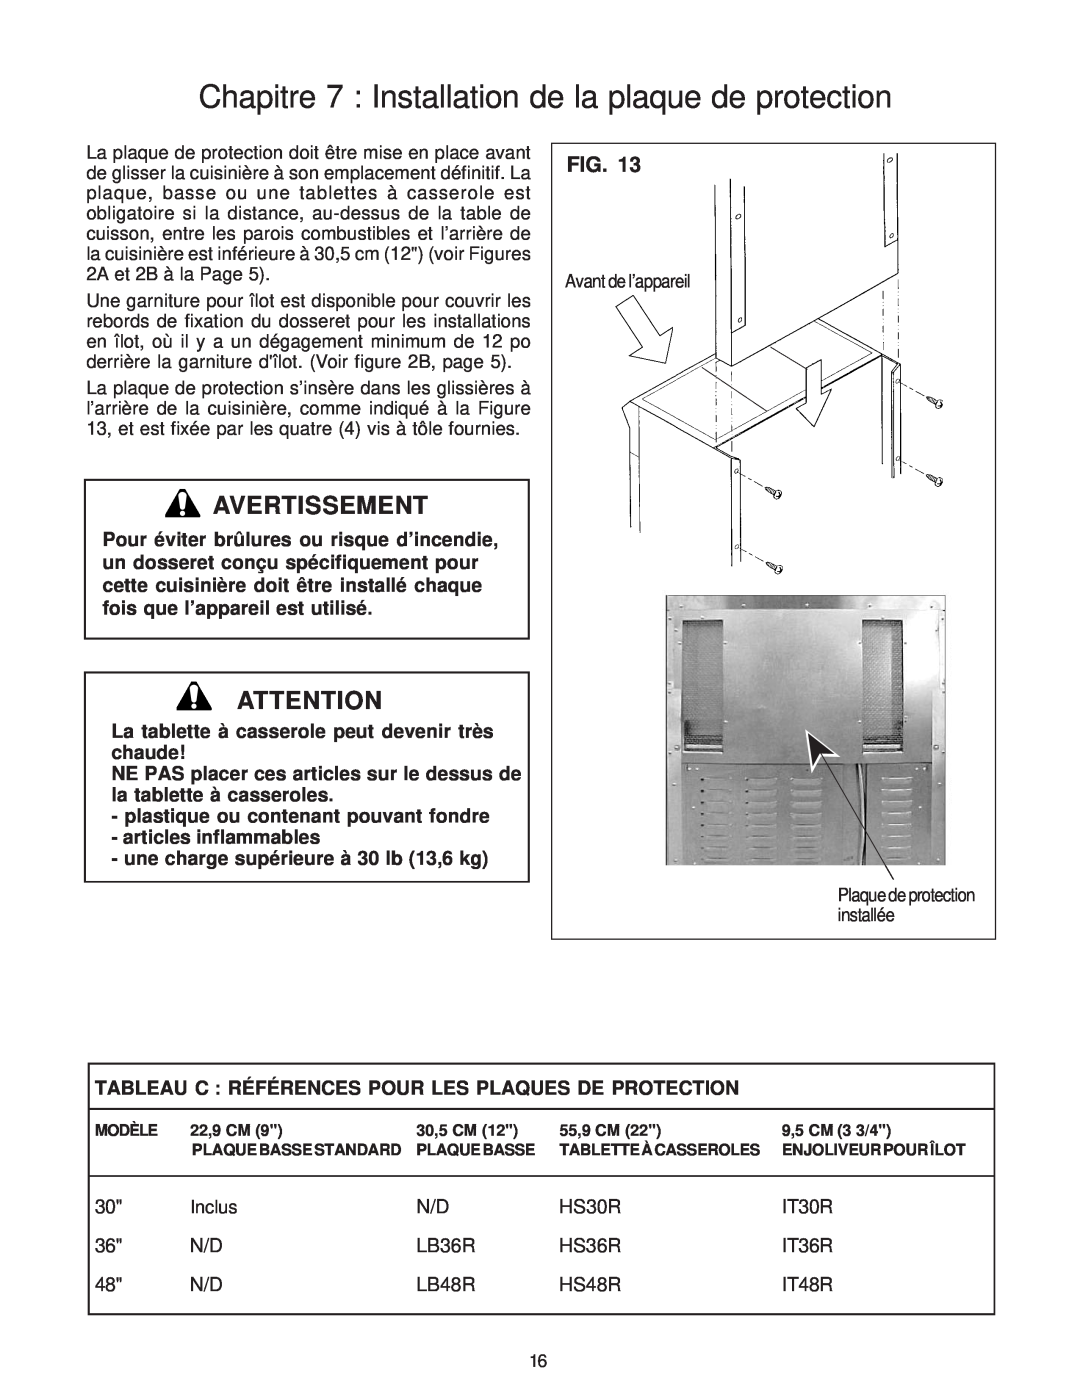 Thermador PD30, PD36, PD48 installation instructions Chapitre 7 Installation de la plaque de protection, Avertissement 